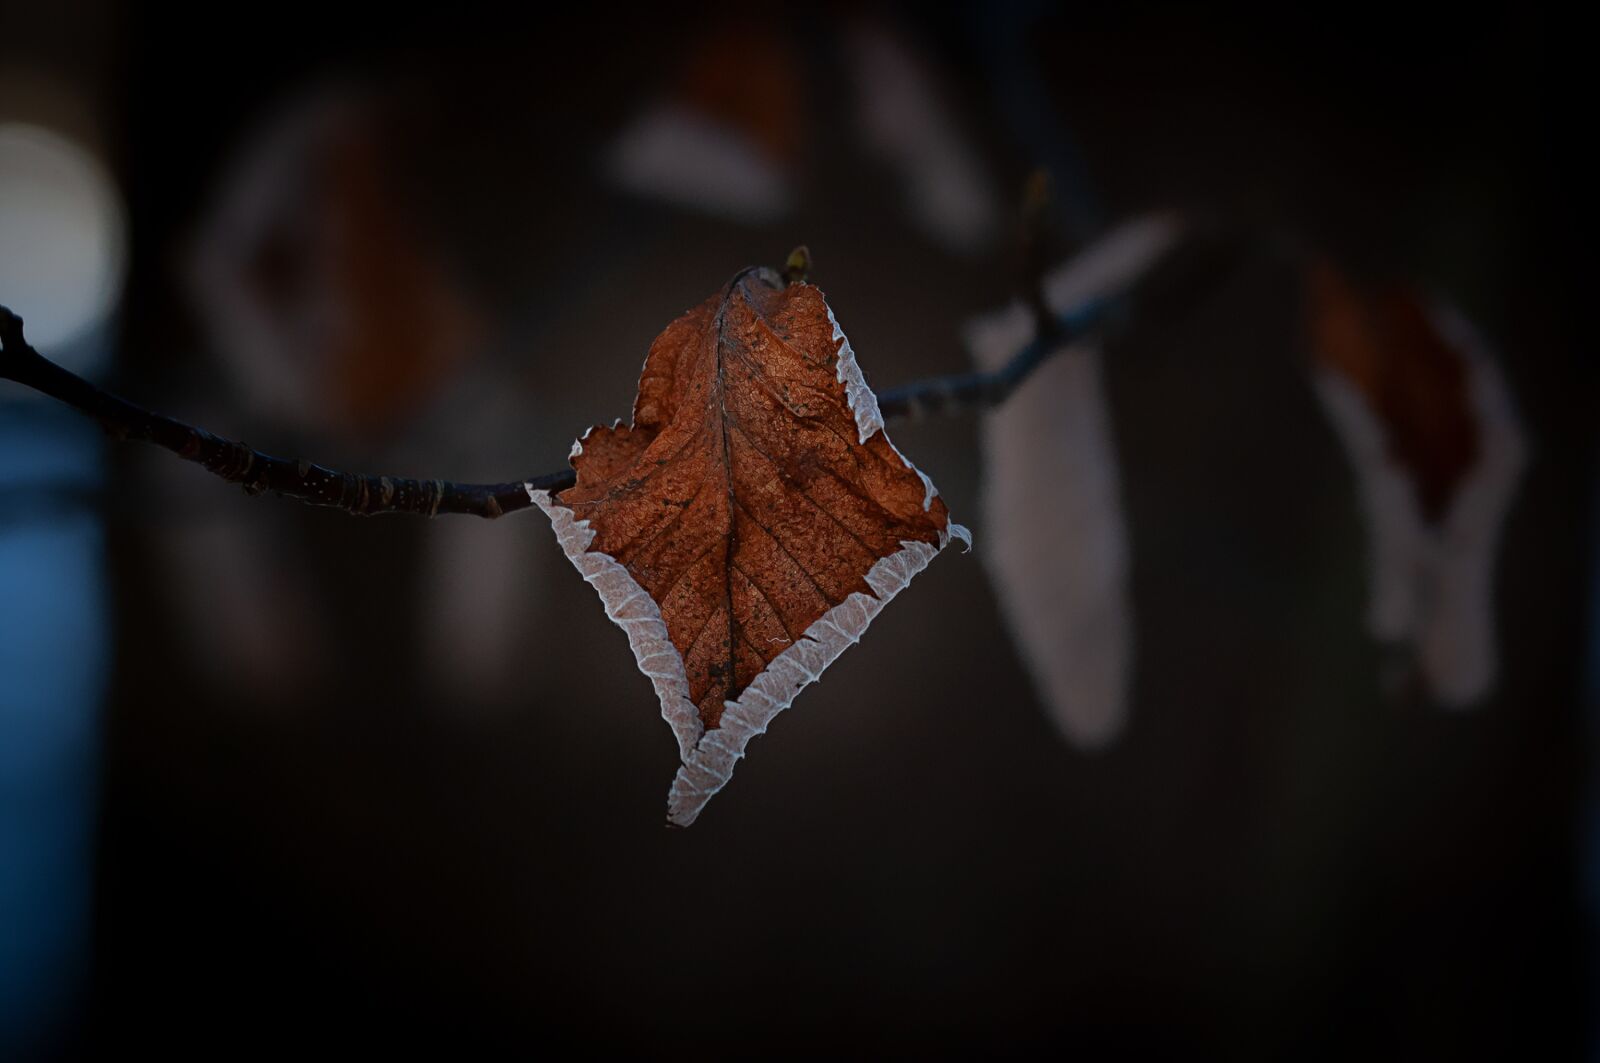 Nikon D90 sample photo. Leaf, dry, autumn photography